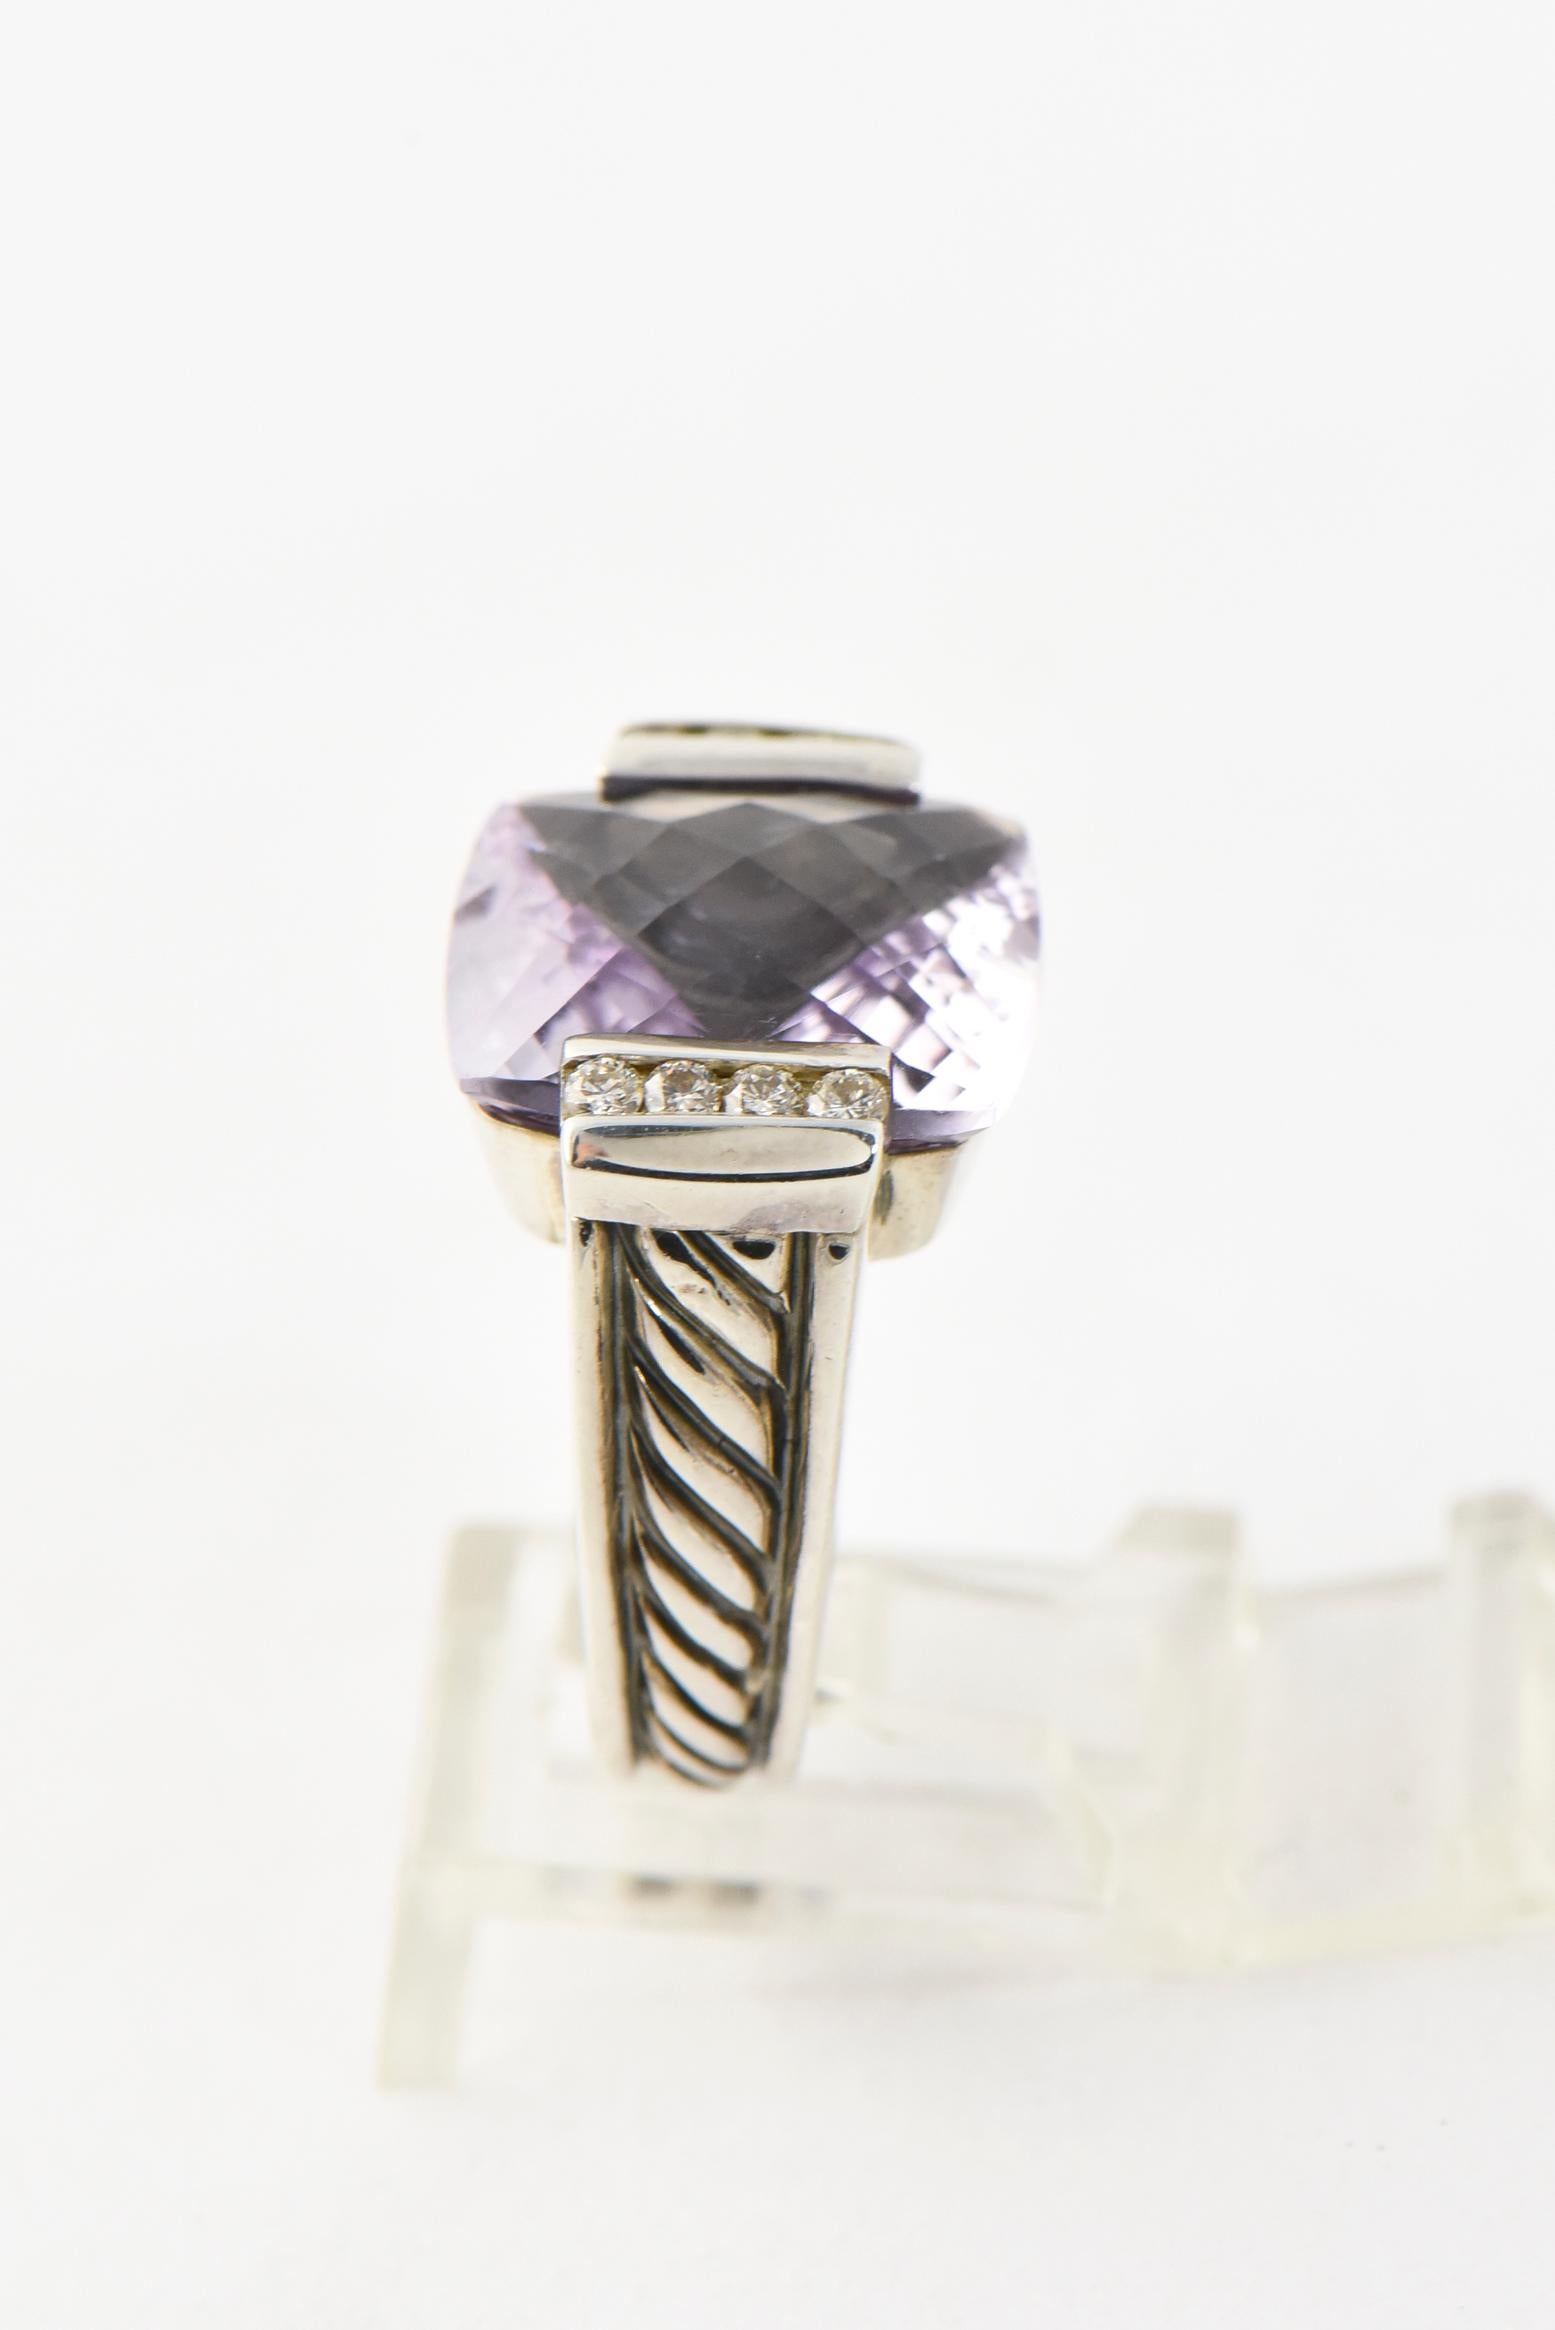 david yurman purple stone ring